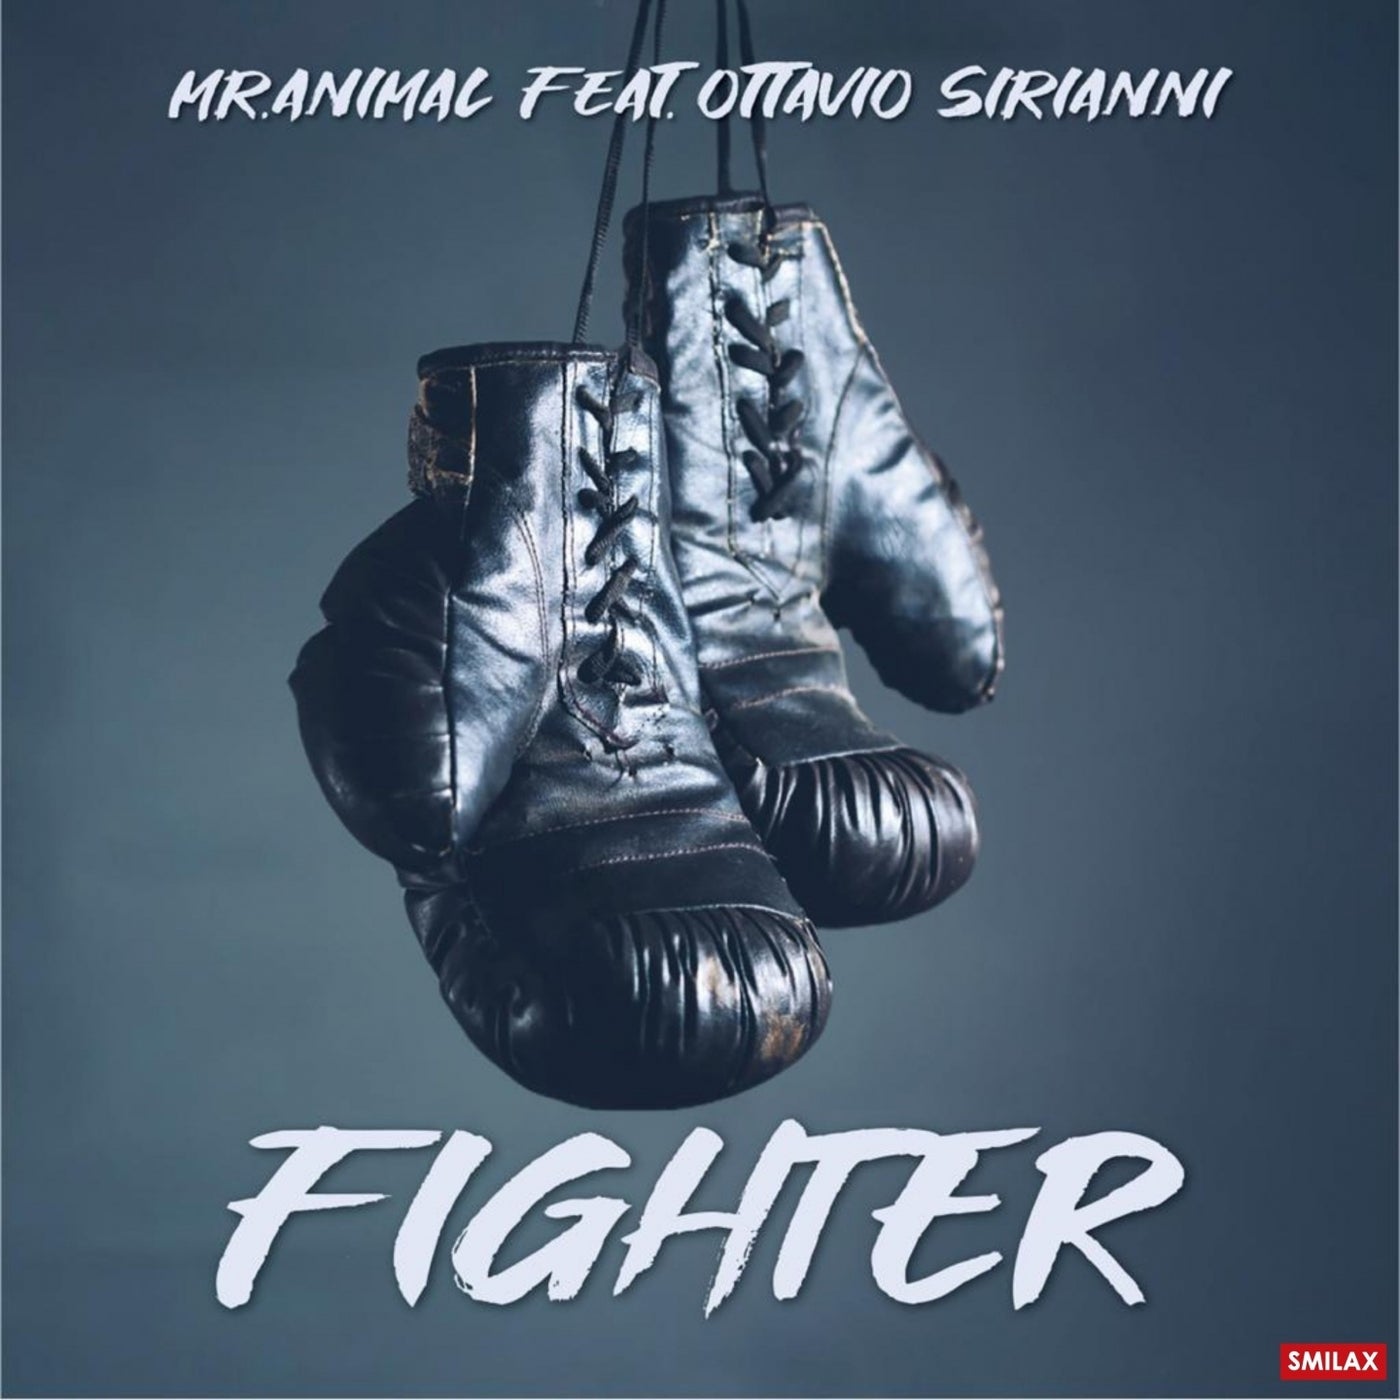 Fighter (feat. Ottavio Sirianni)